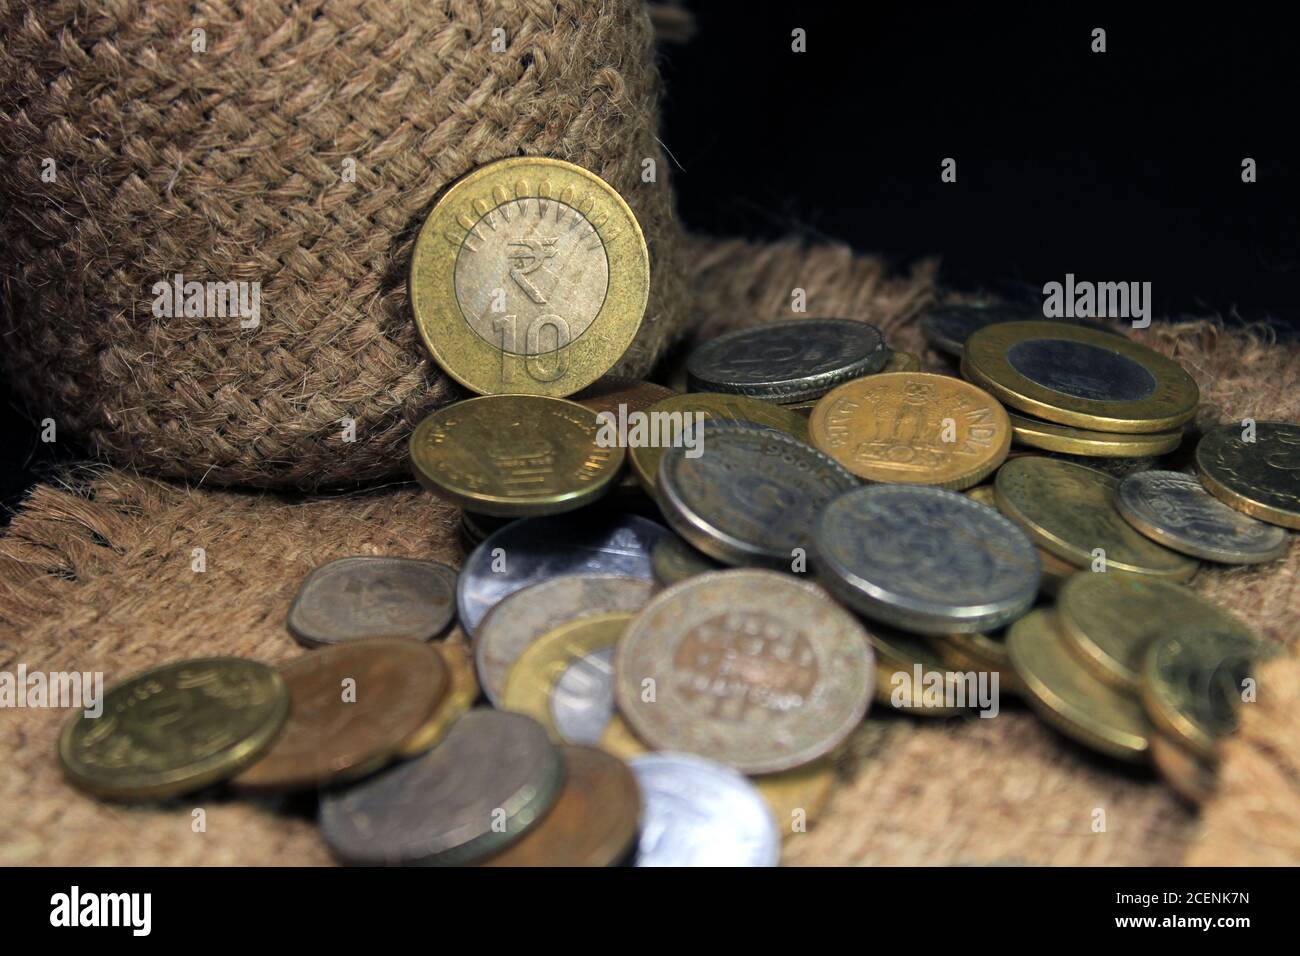 Pile de 1, 2, 5, 10 monnaie en métal roupie indienne isolée sur fond de sac. Concept d'investissement financier, économique, bancaire et d'échange. Banque D'Images